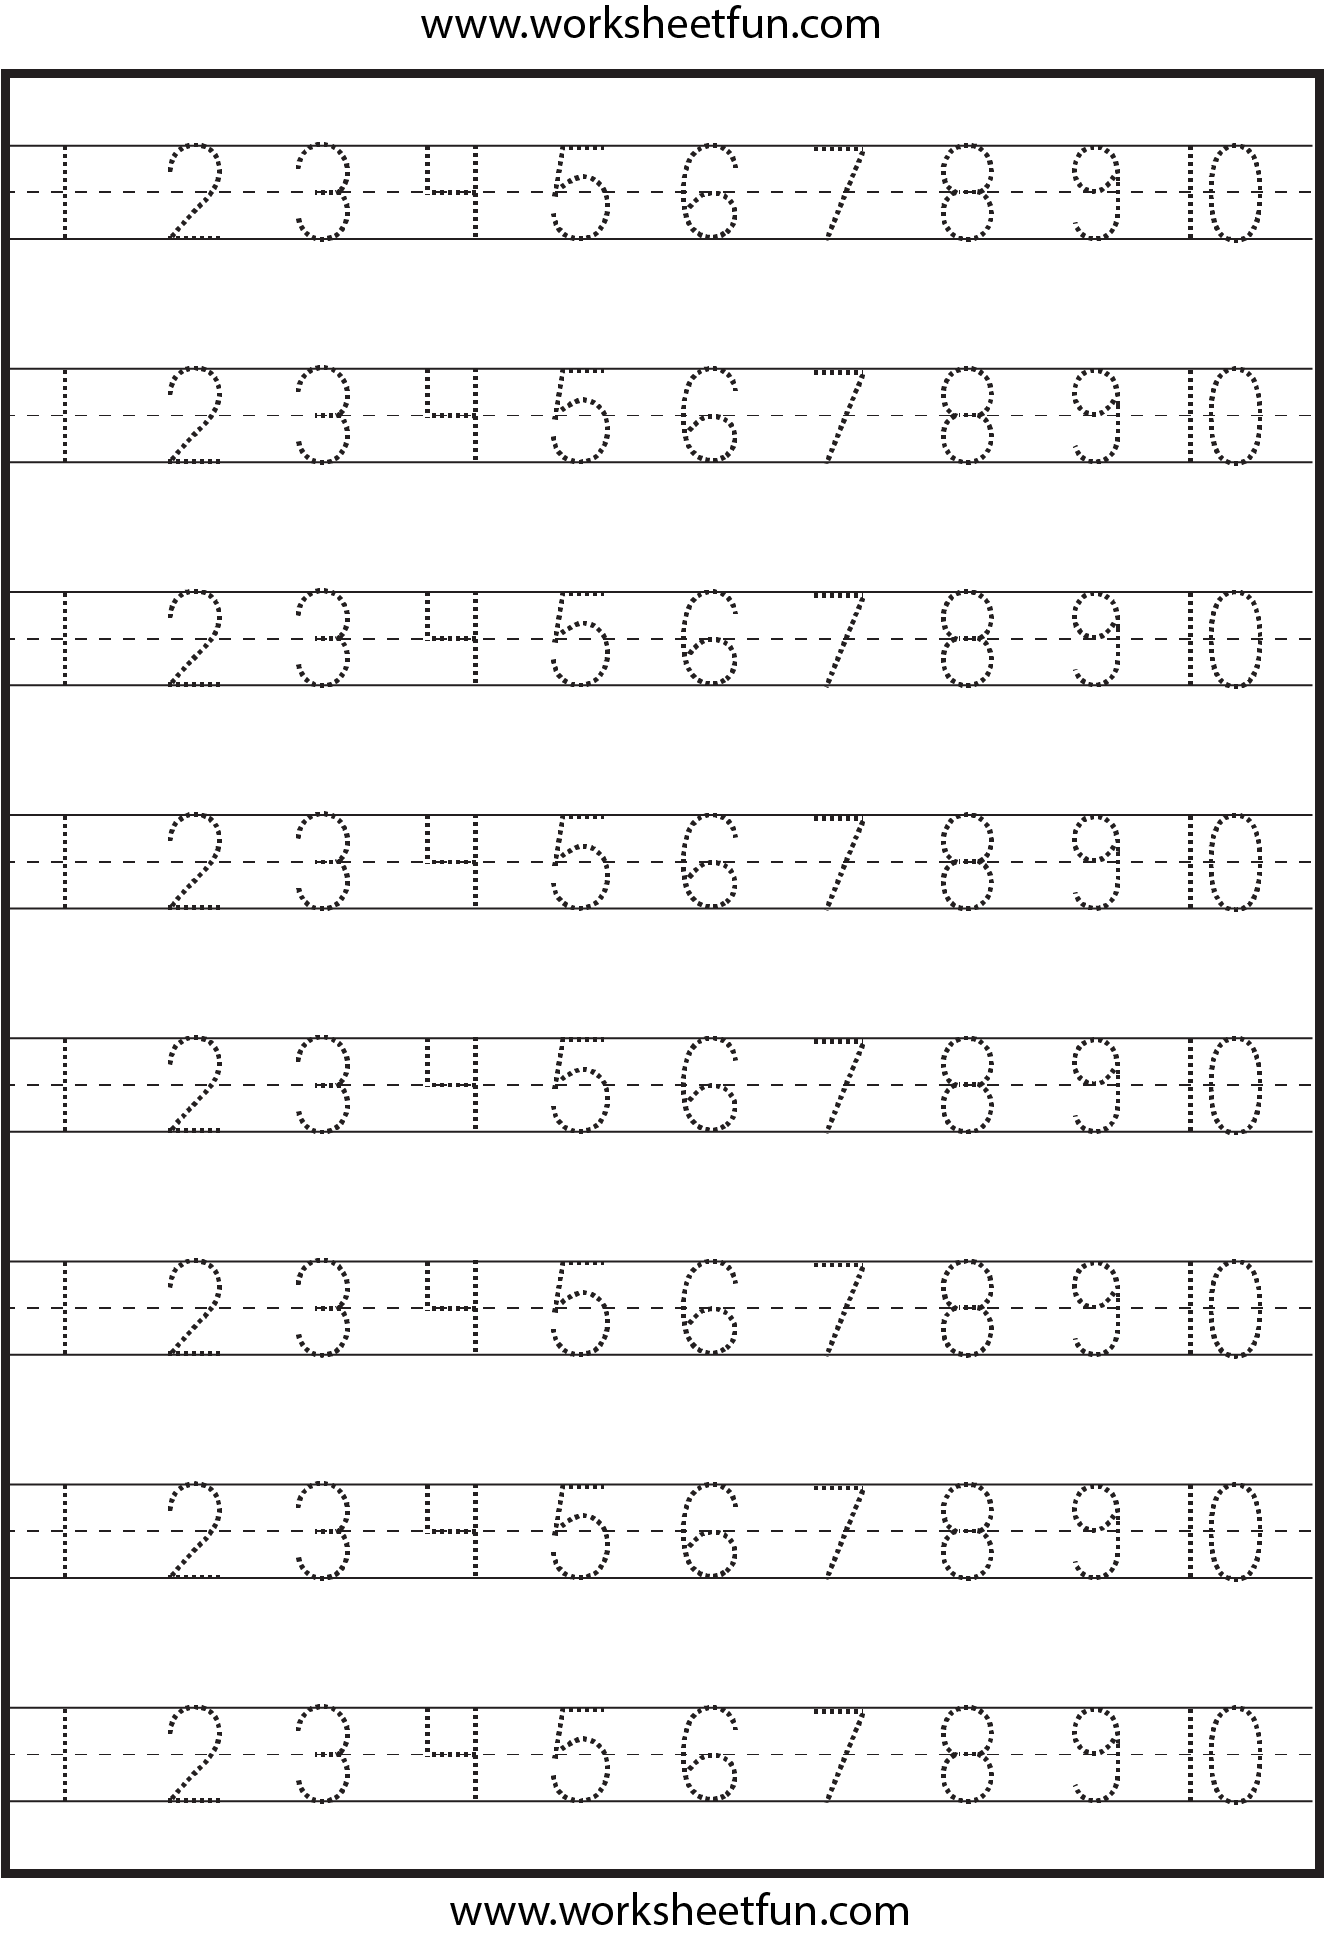 number-tracing-1-10-worksheet-free-printable-worksheets